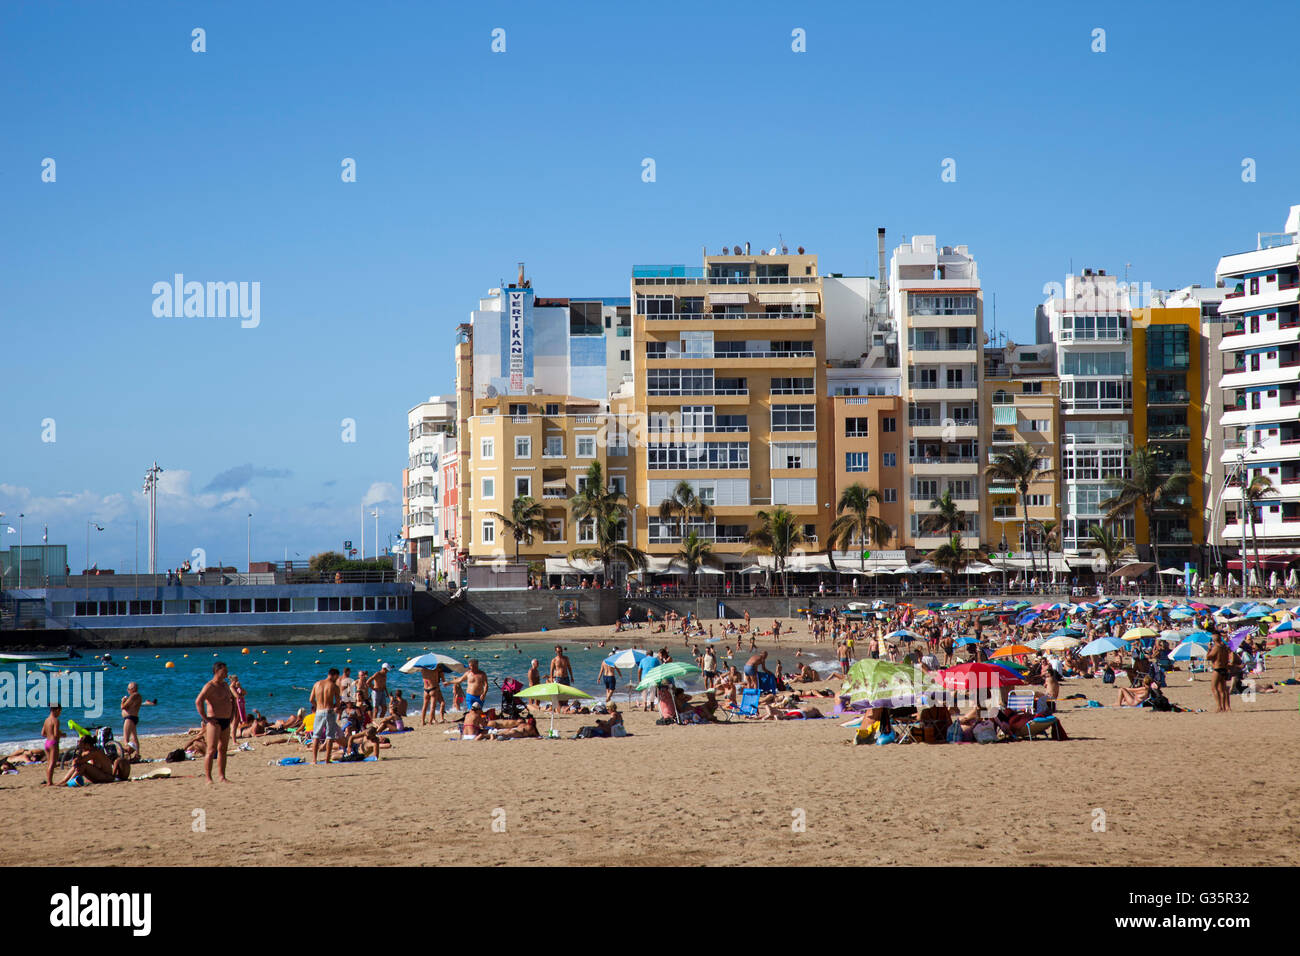 Playa de las canteras, Las Palmas de Gran Canaria Paese, Gran Canaria Island, arcipelago delle Canarie, Spagna, Europa Foto Stock